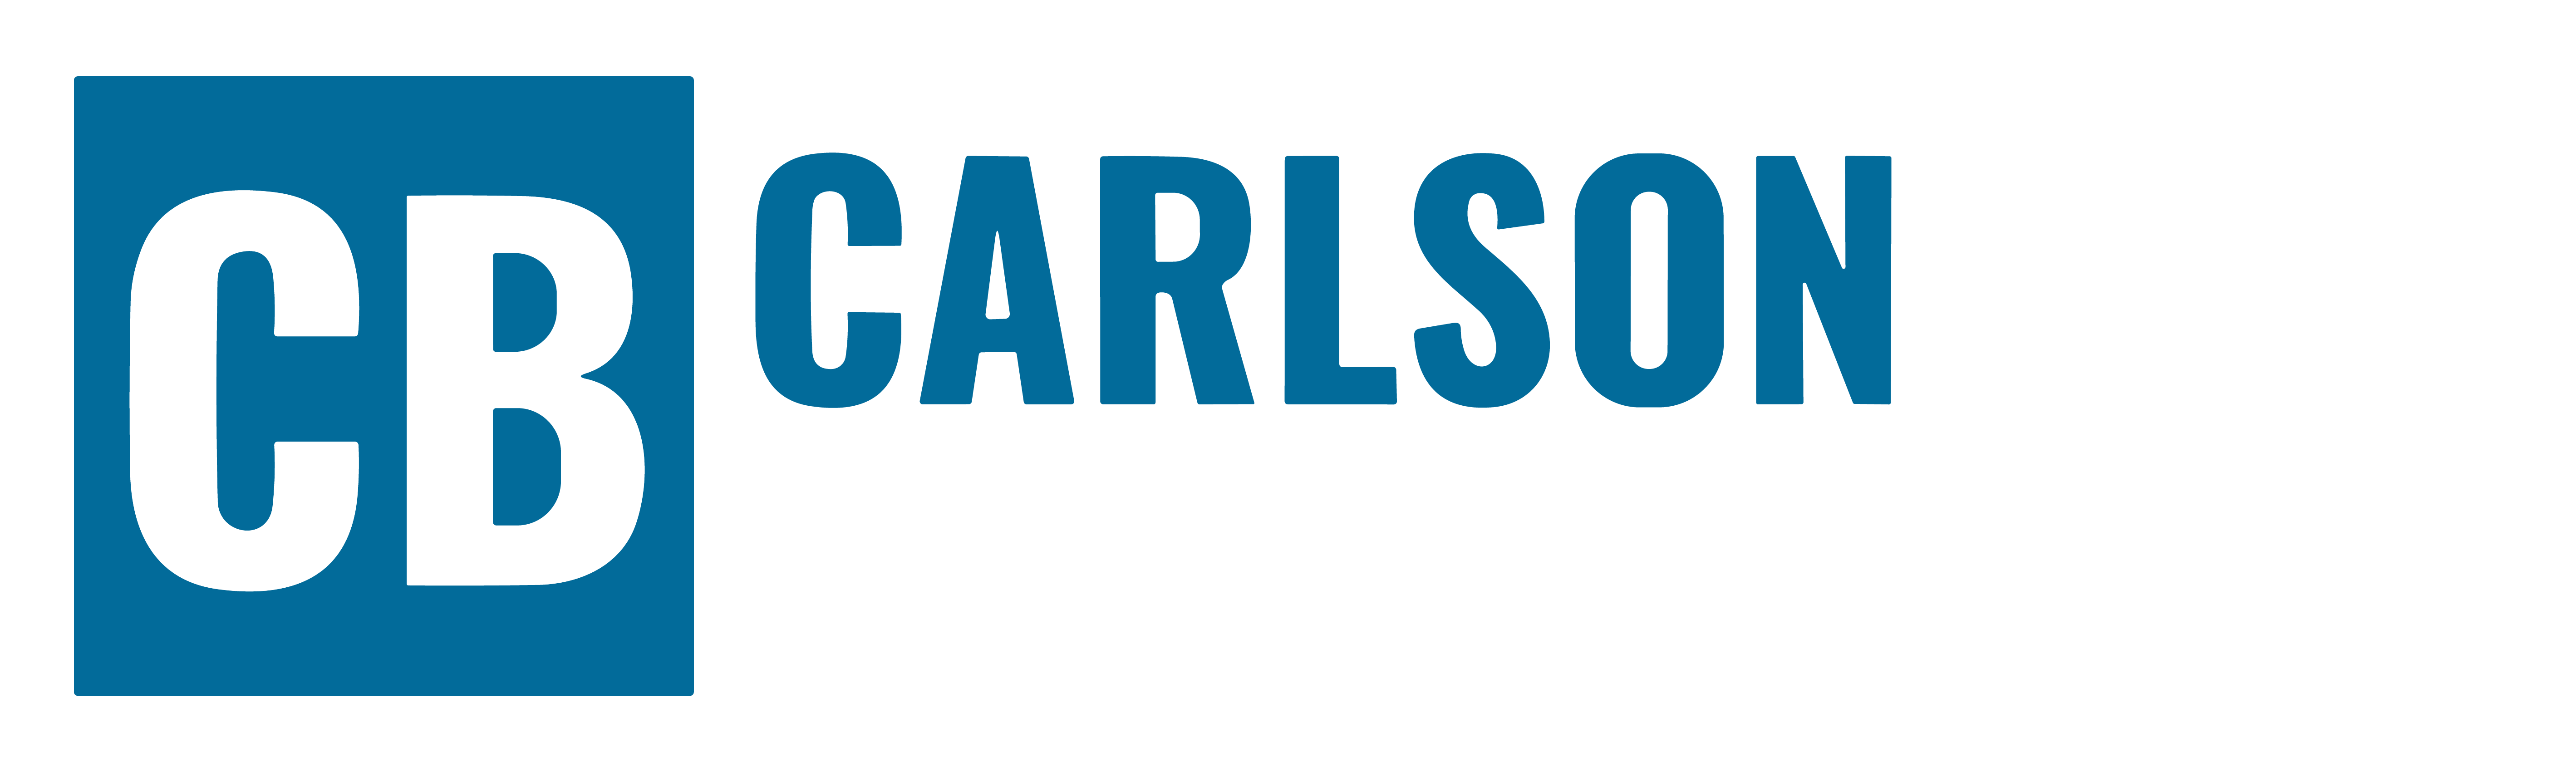 carlson bier logo